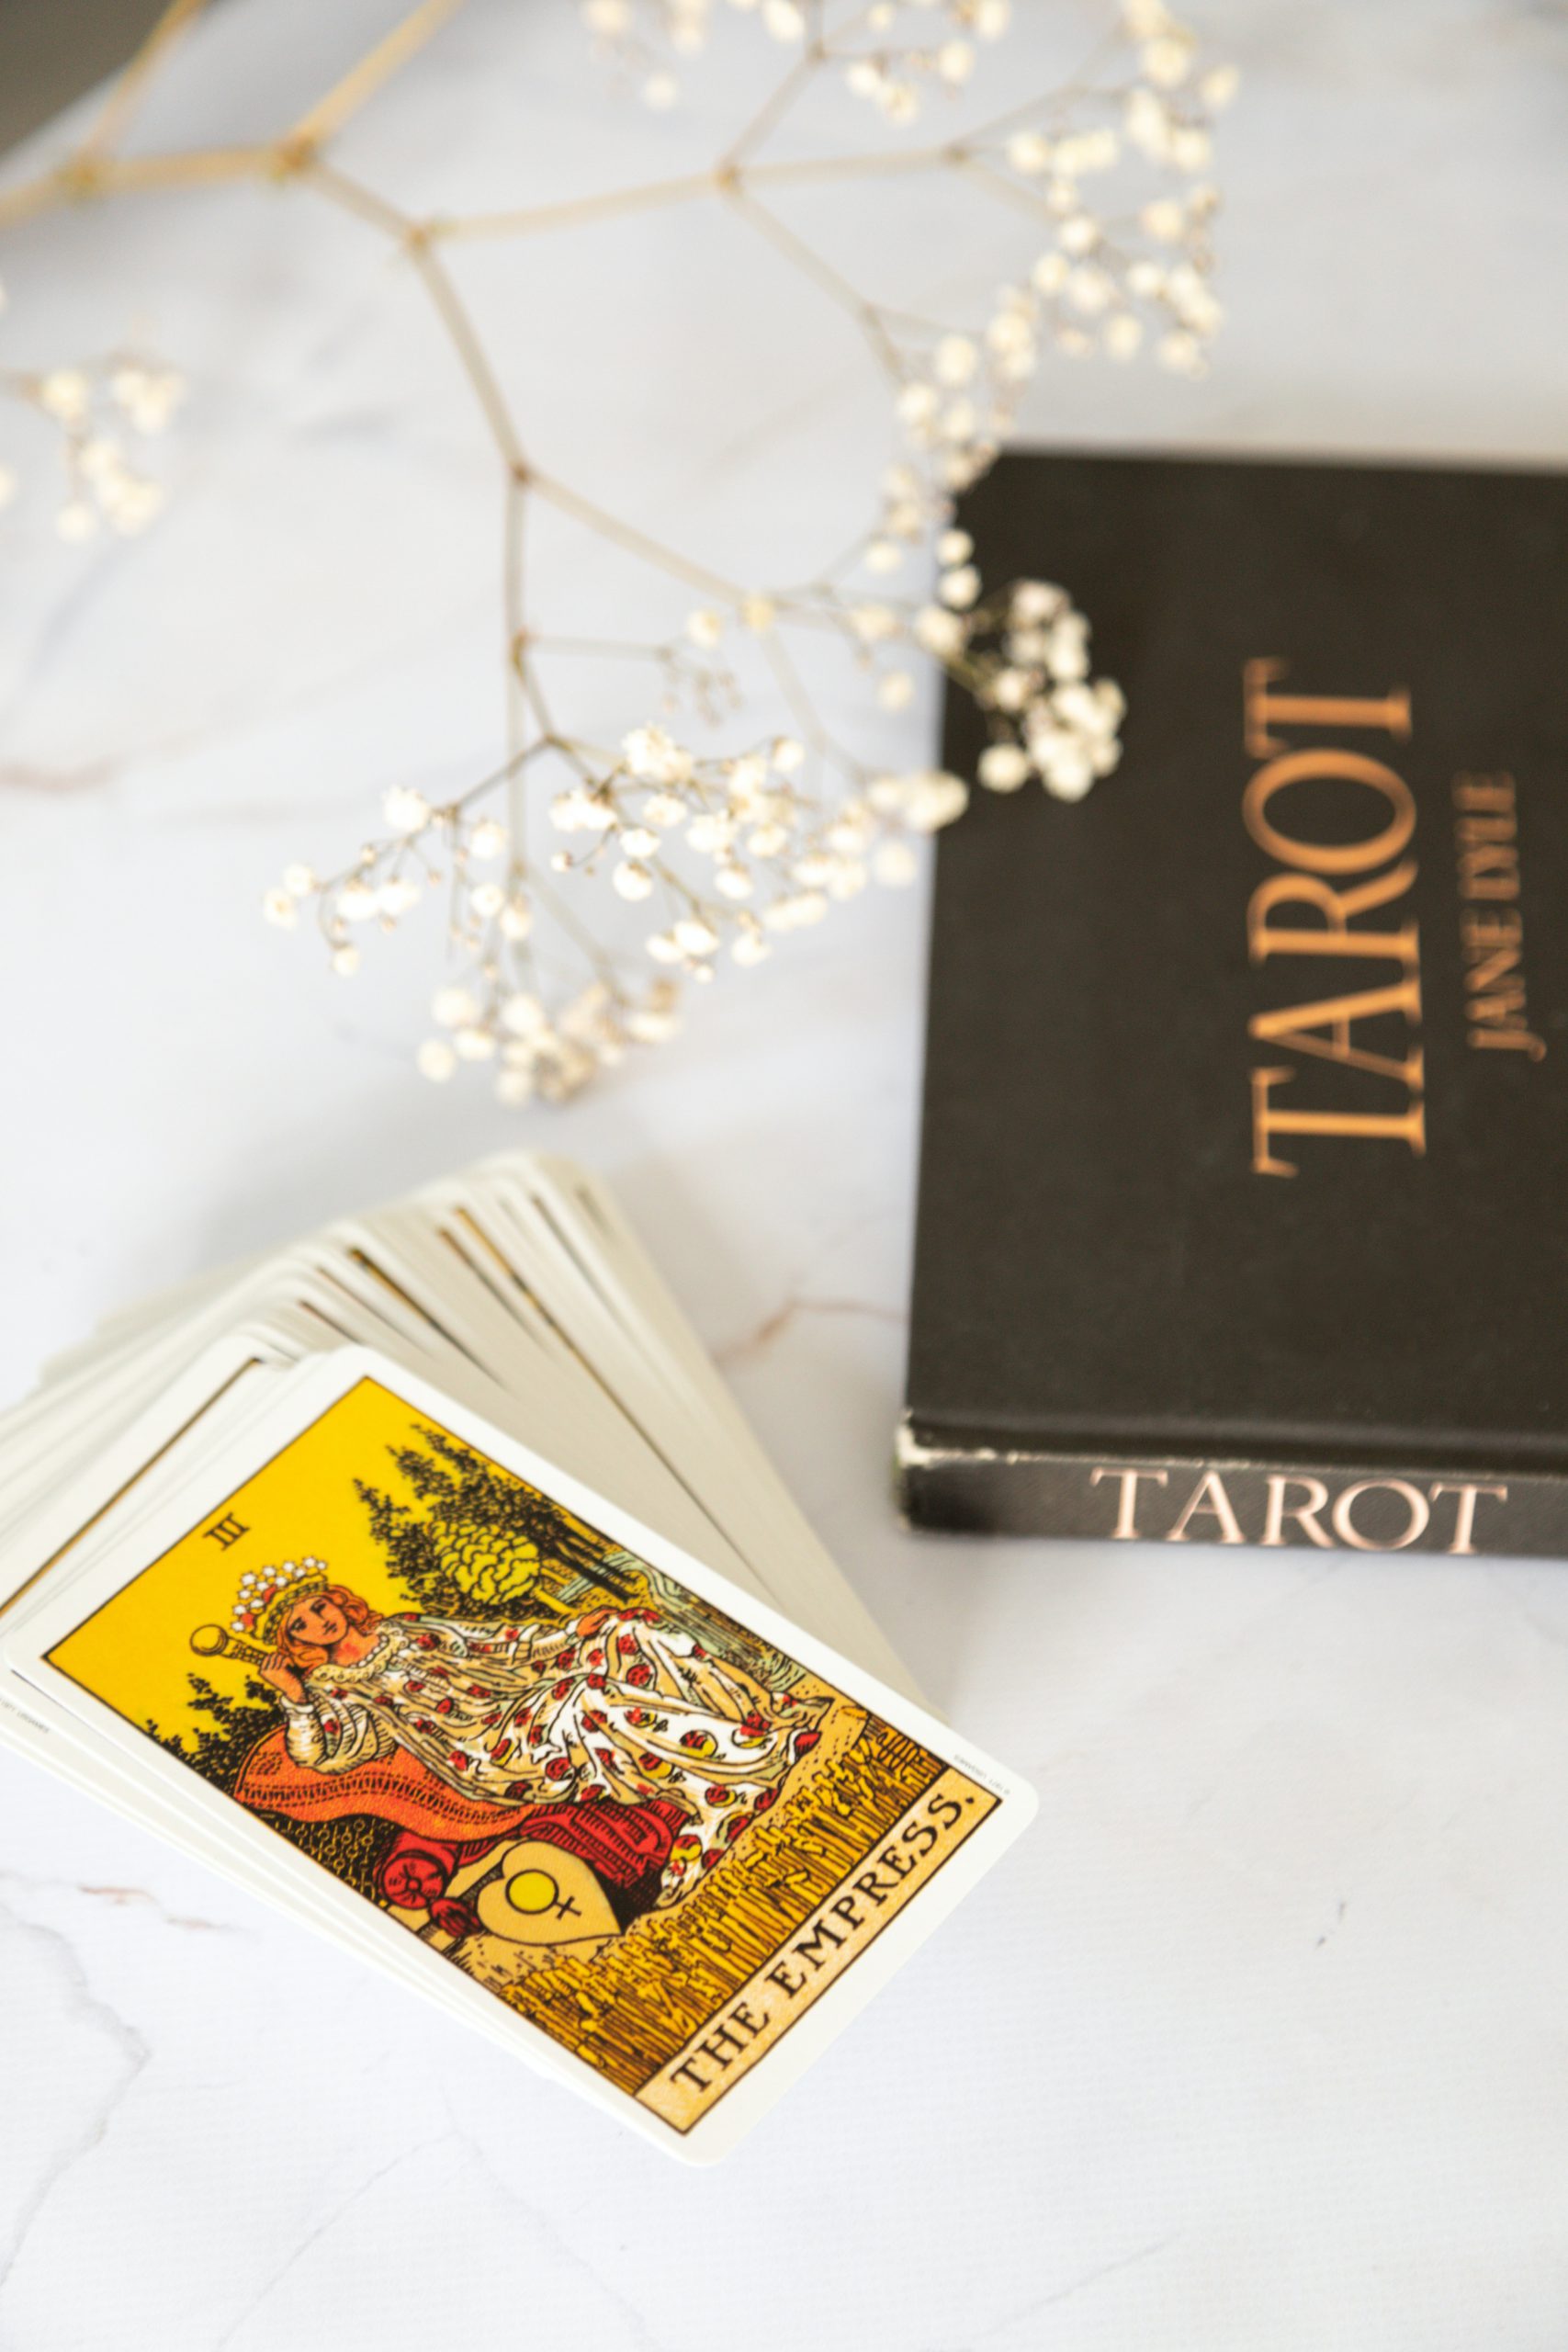 tarot cards and book on tarot